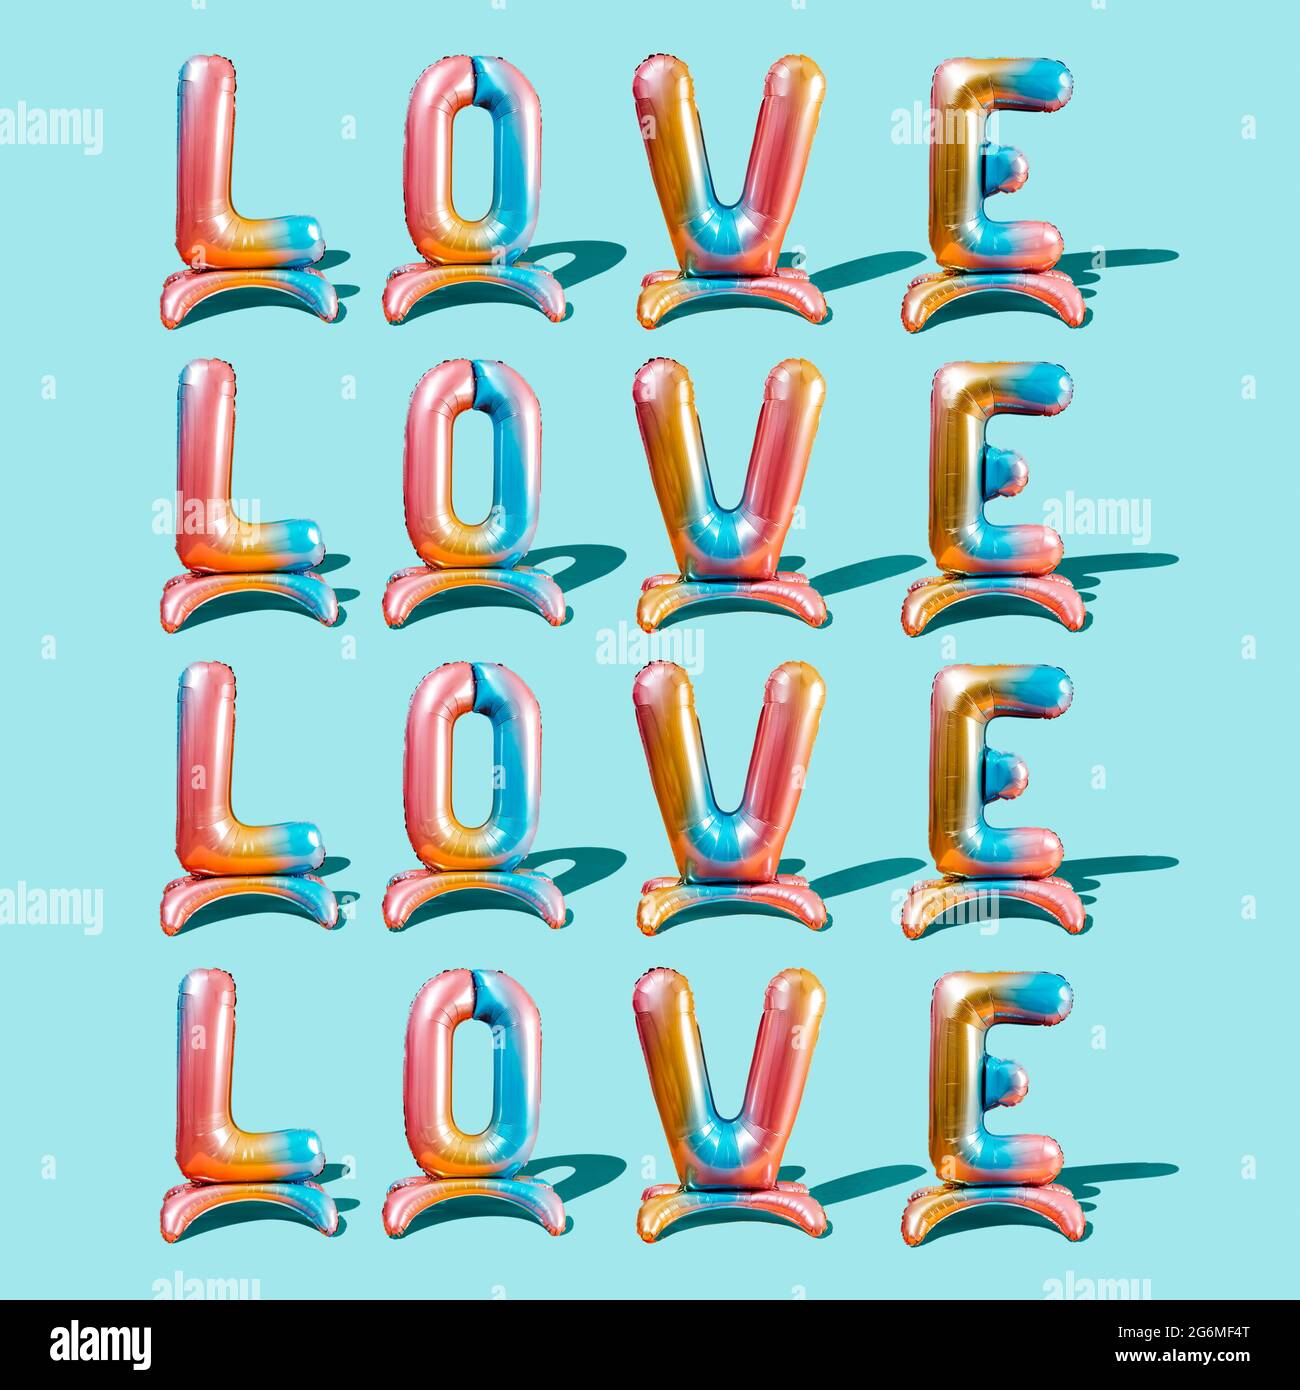 Das Wort Liebe geschrieben mit vier bunten Buchstabenballons, viermal auf blauem Hintergrund wiederholt Stockfoto